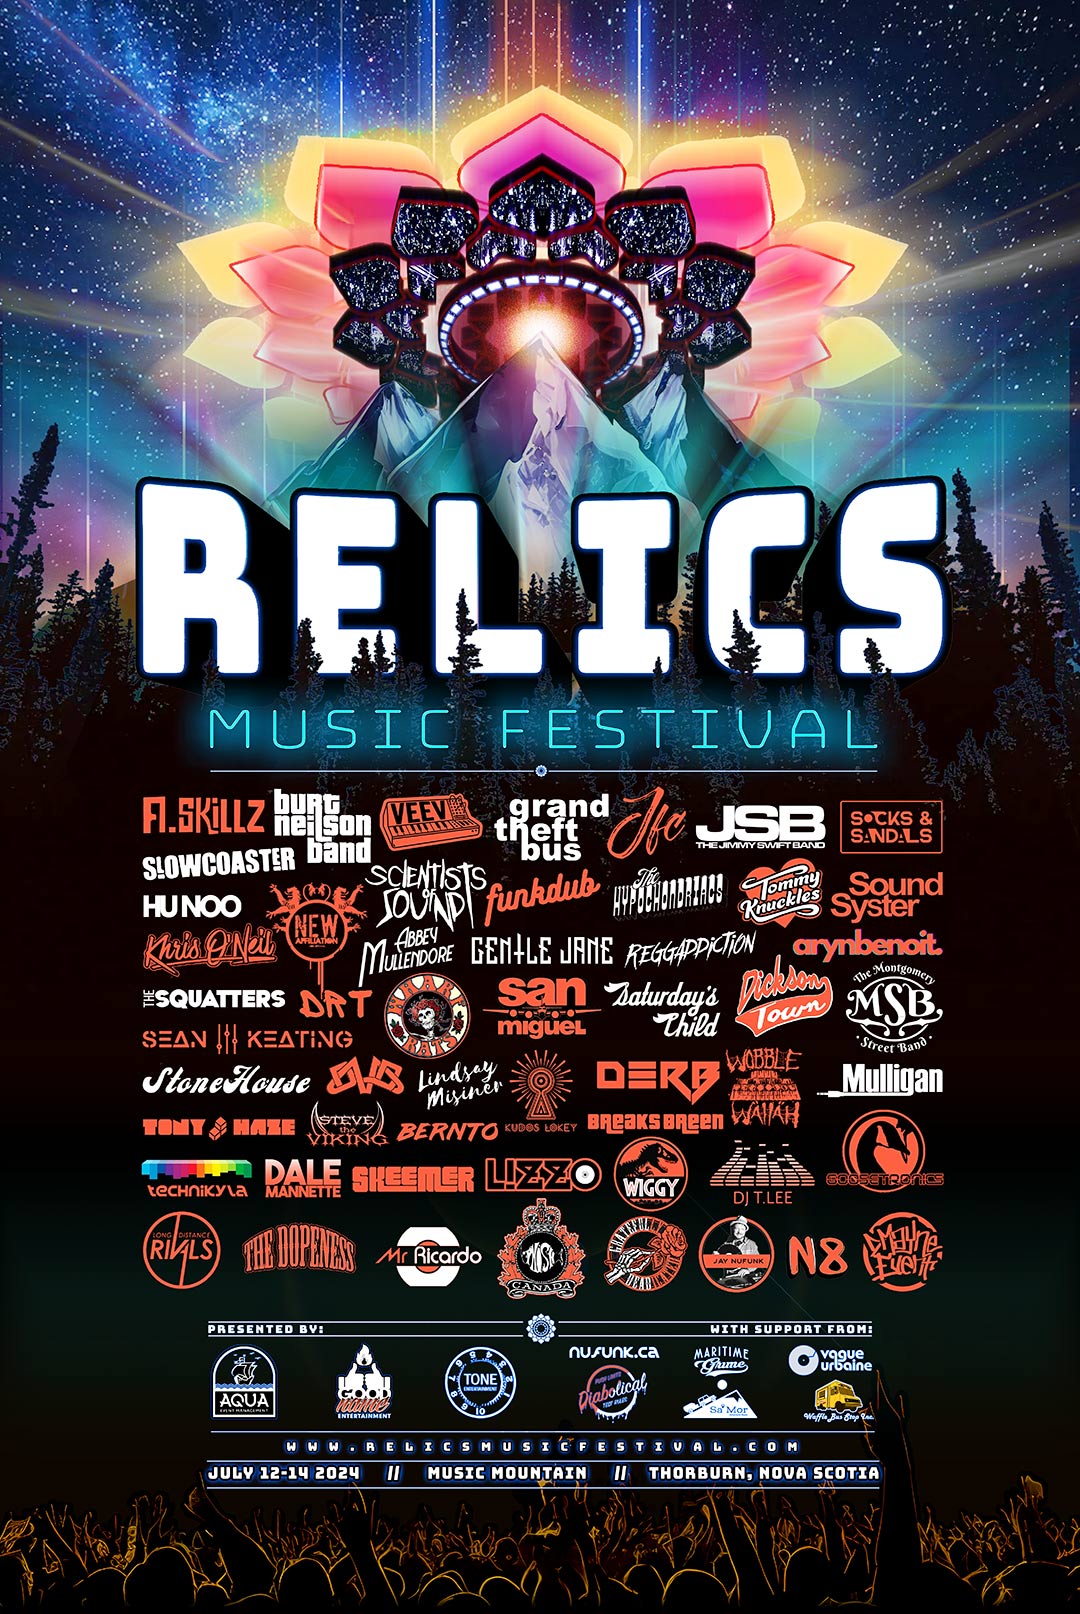 Relics Music Festival